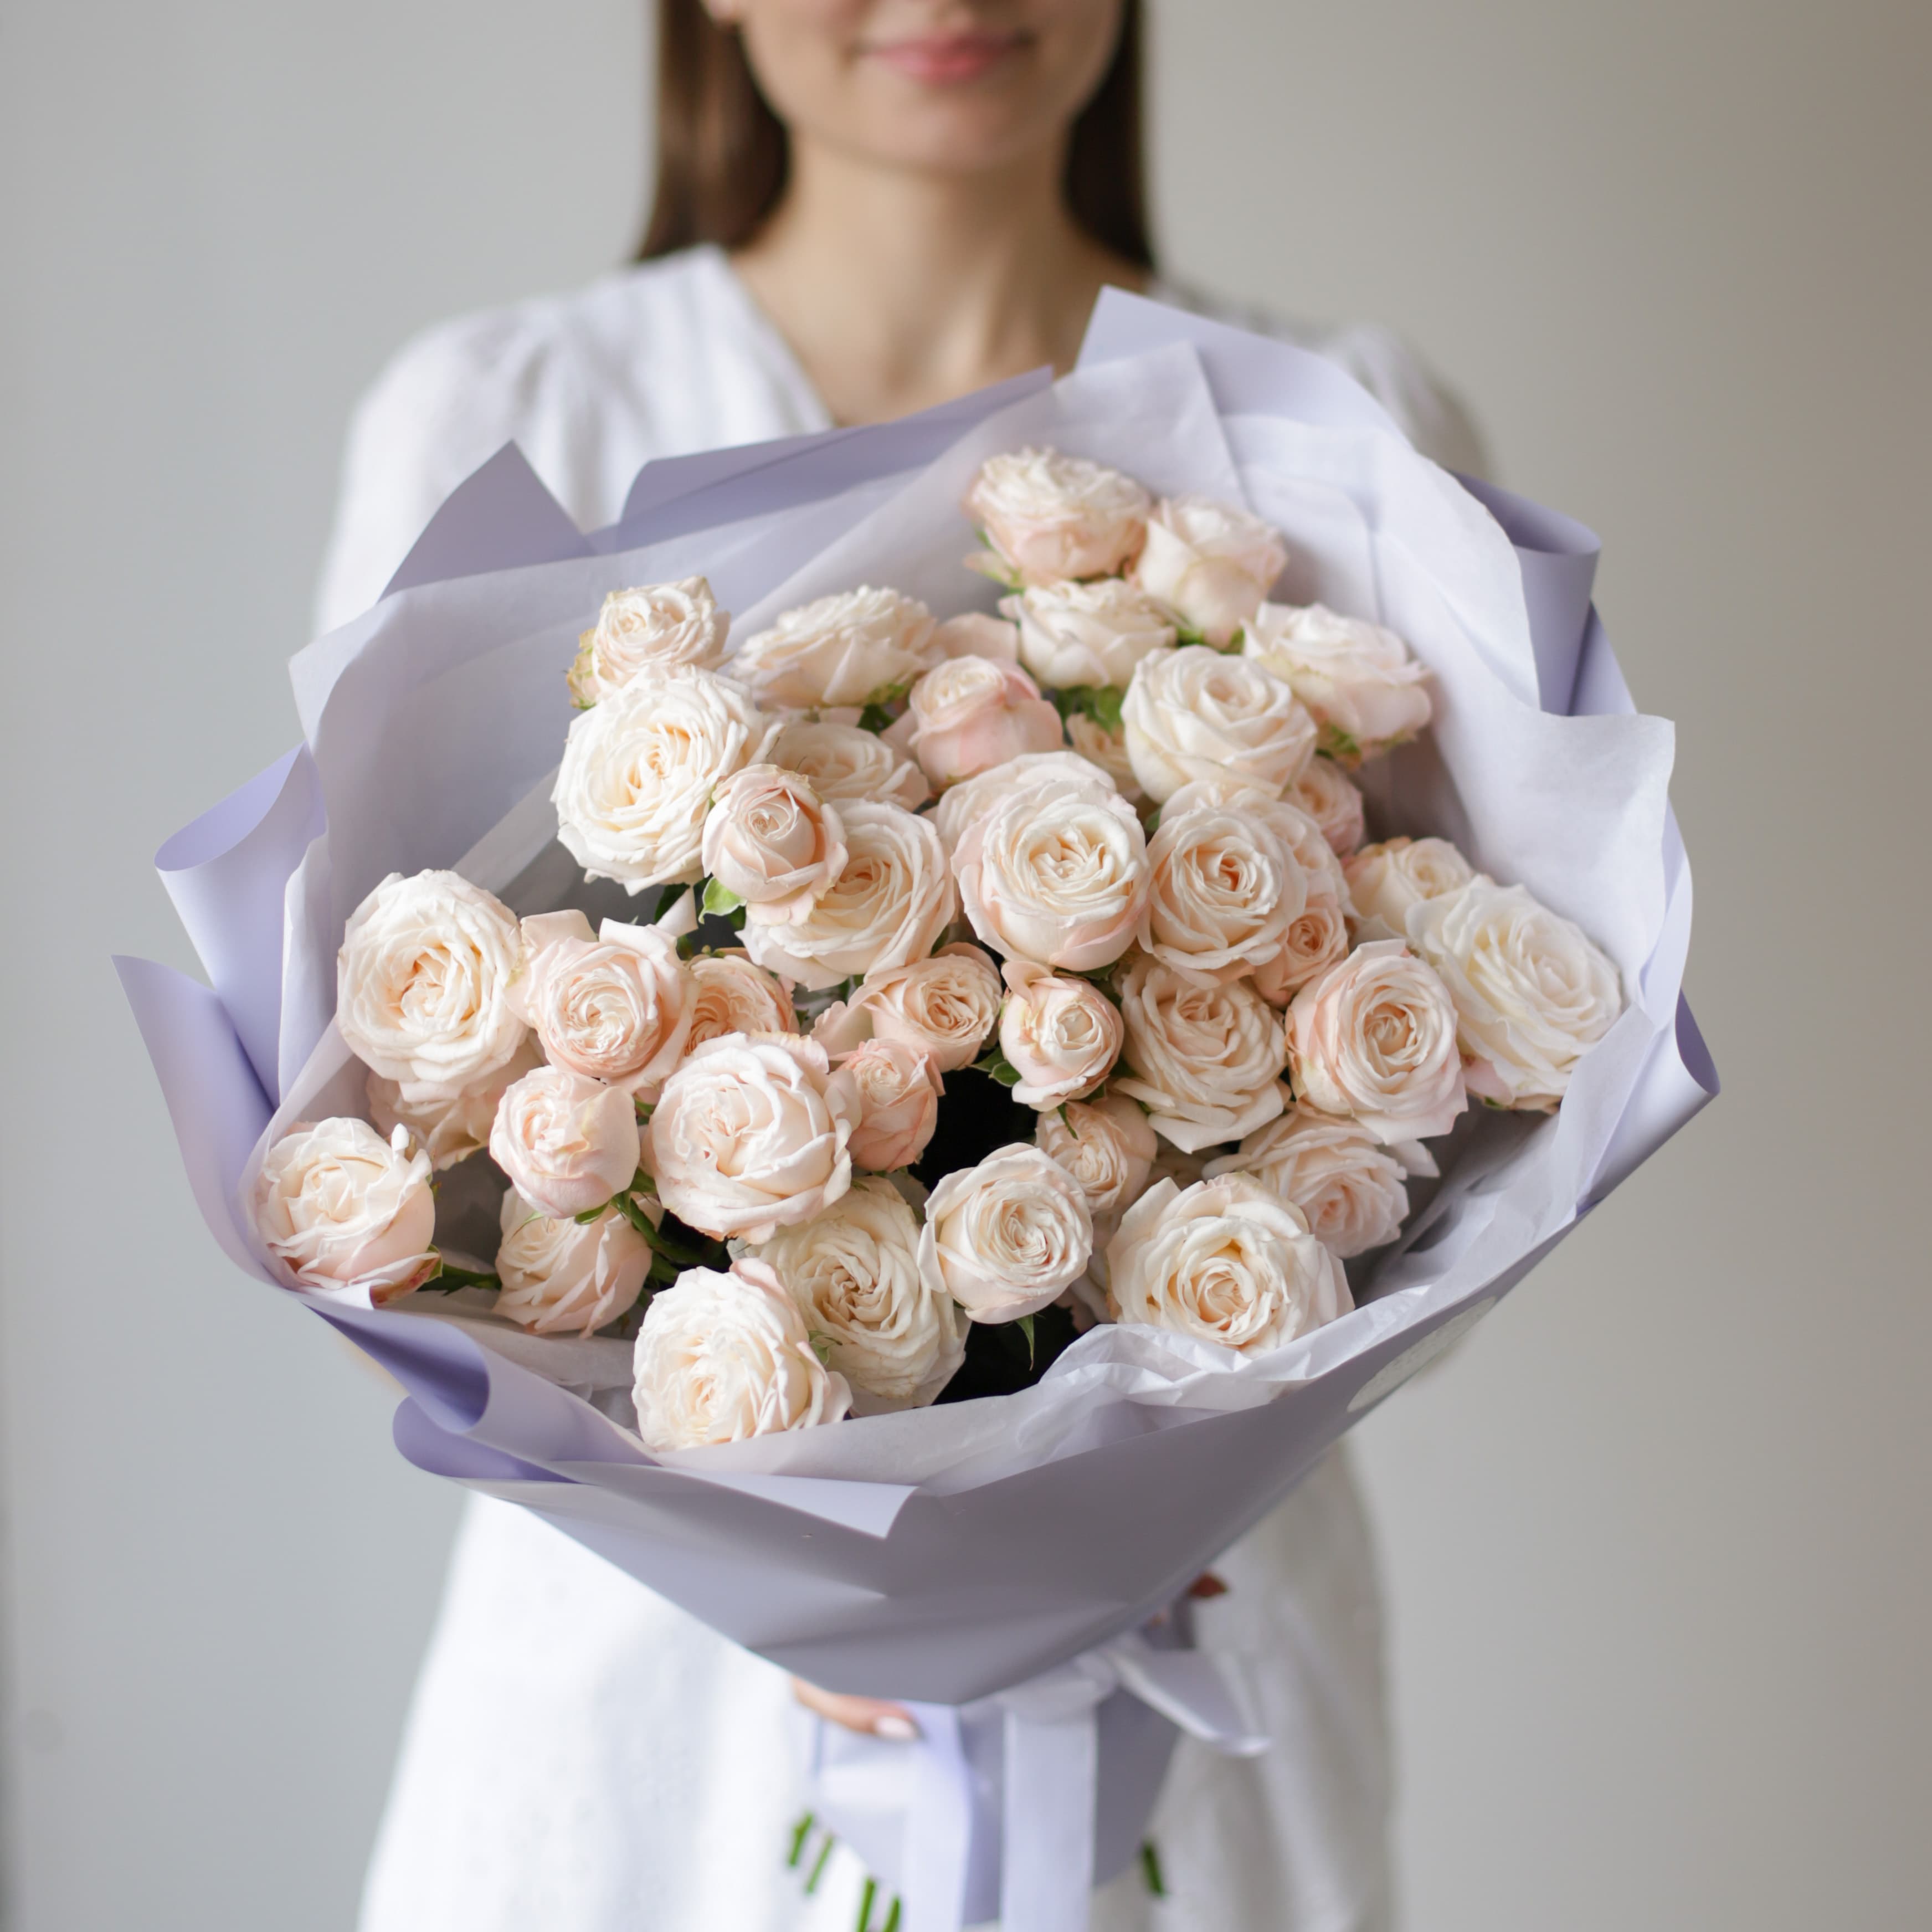 Кустовые пионовидные розы кремового оттенка в лавандовом оформлении №1494 - Фото 1